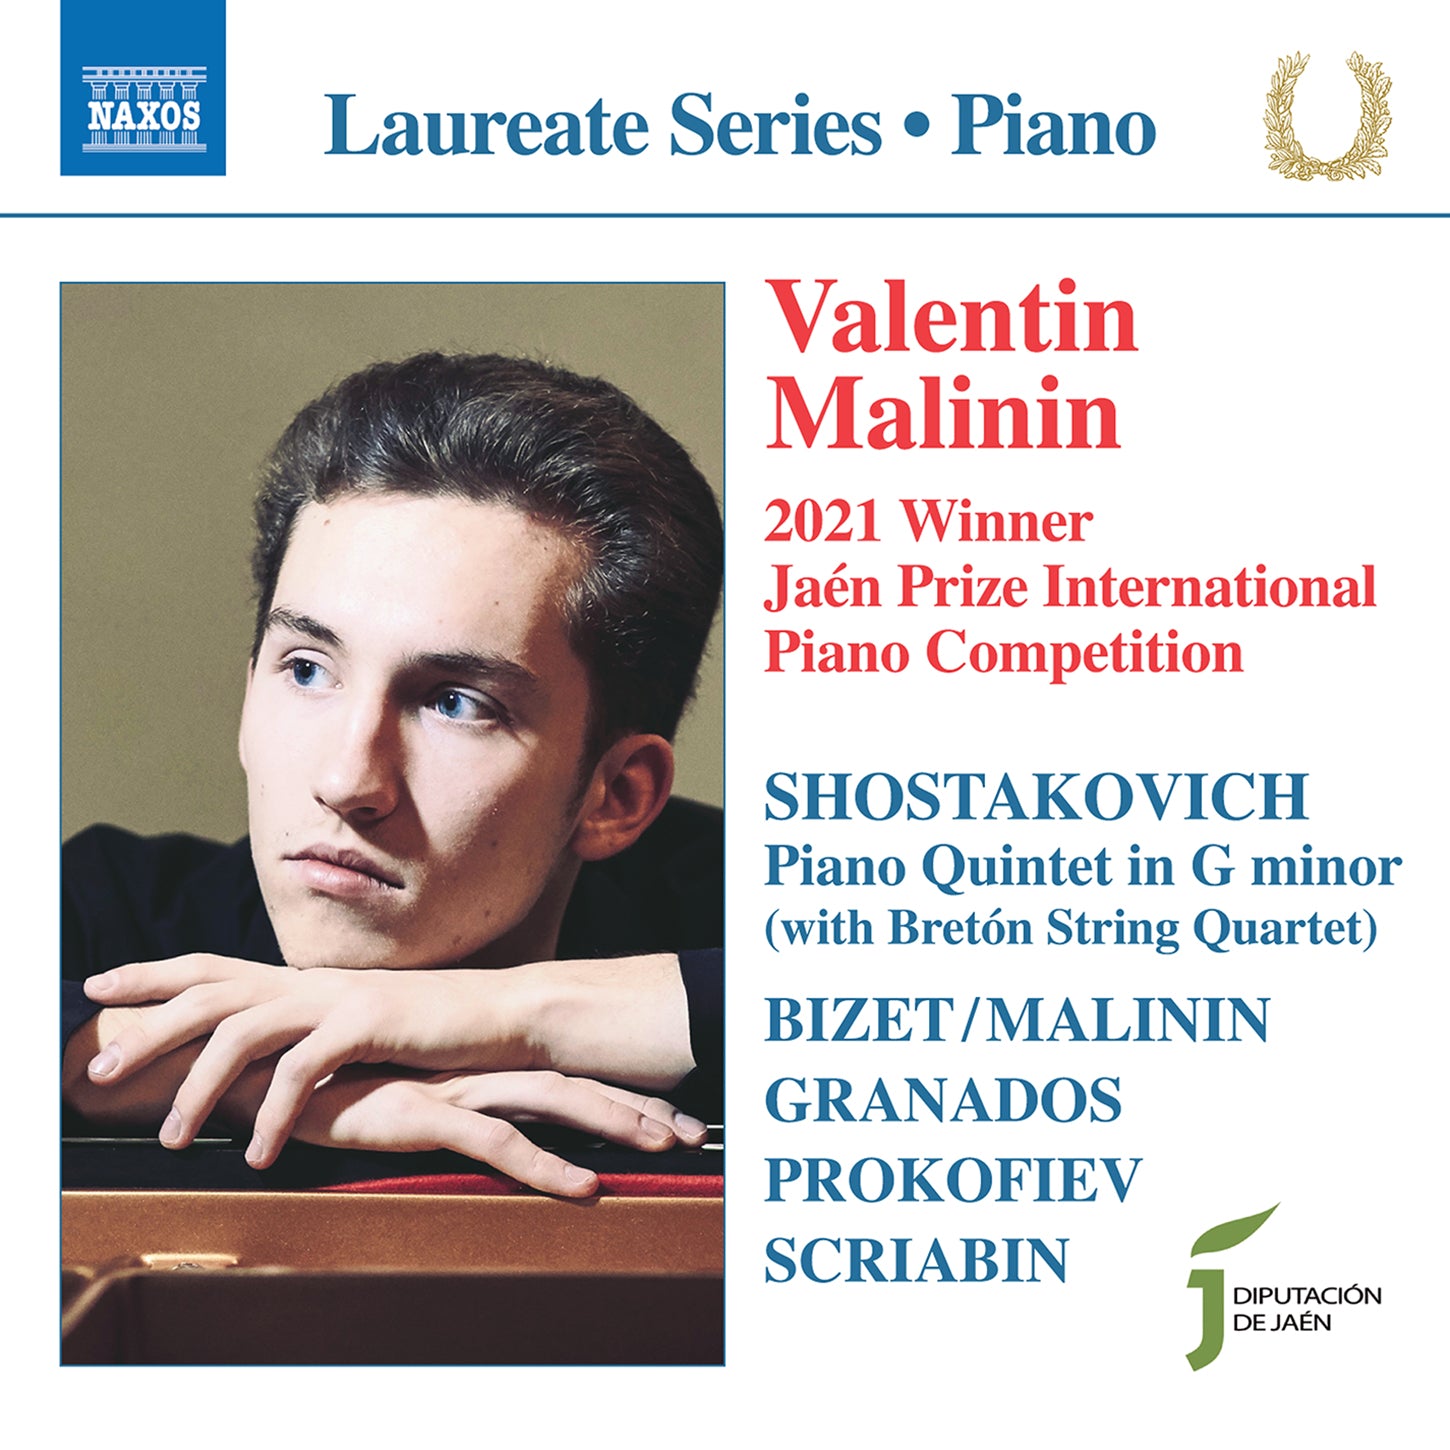 Shostakovich, Granados et al: Valentin Malinin, 2021 Jaén Prize Competition Winner